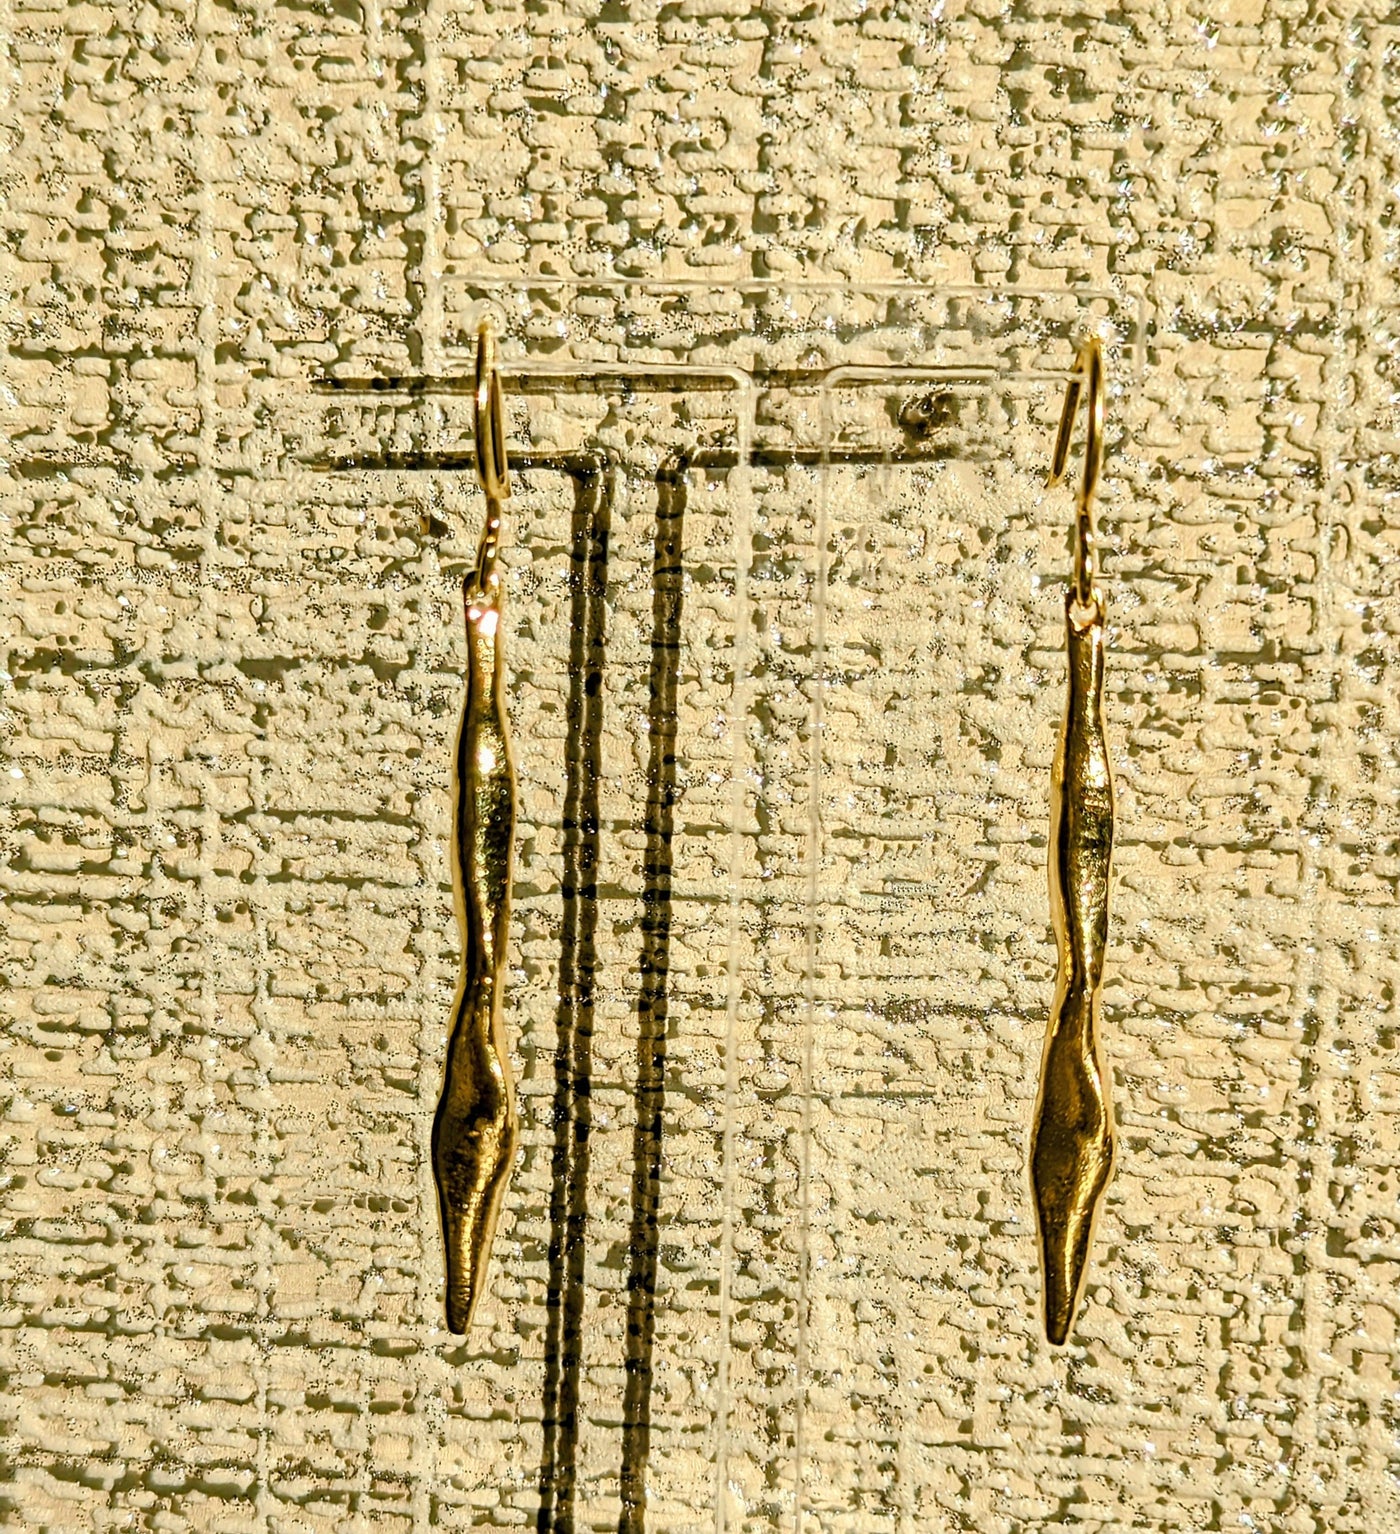 Gold Stick Drop Earrings - Rococo Jewellery